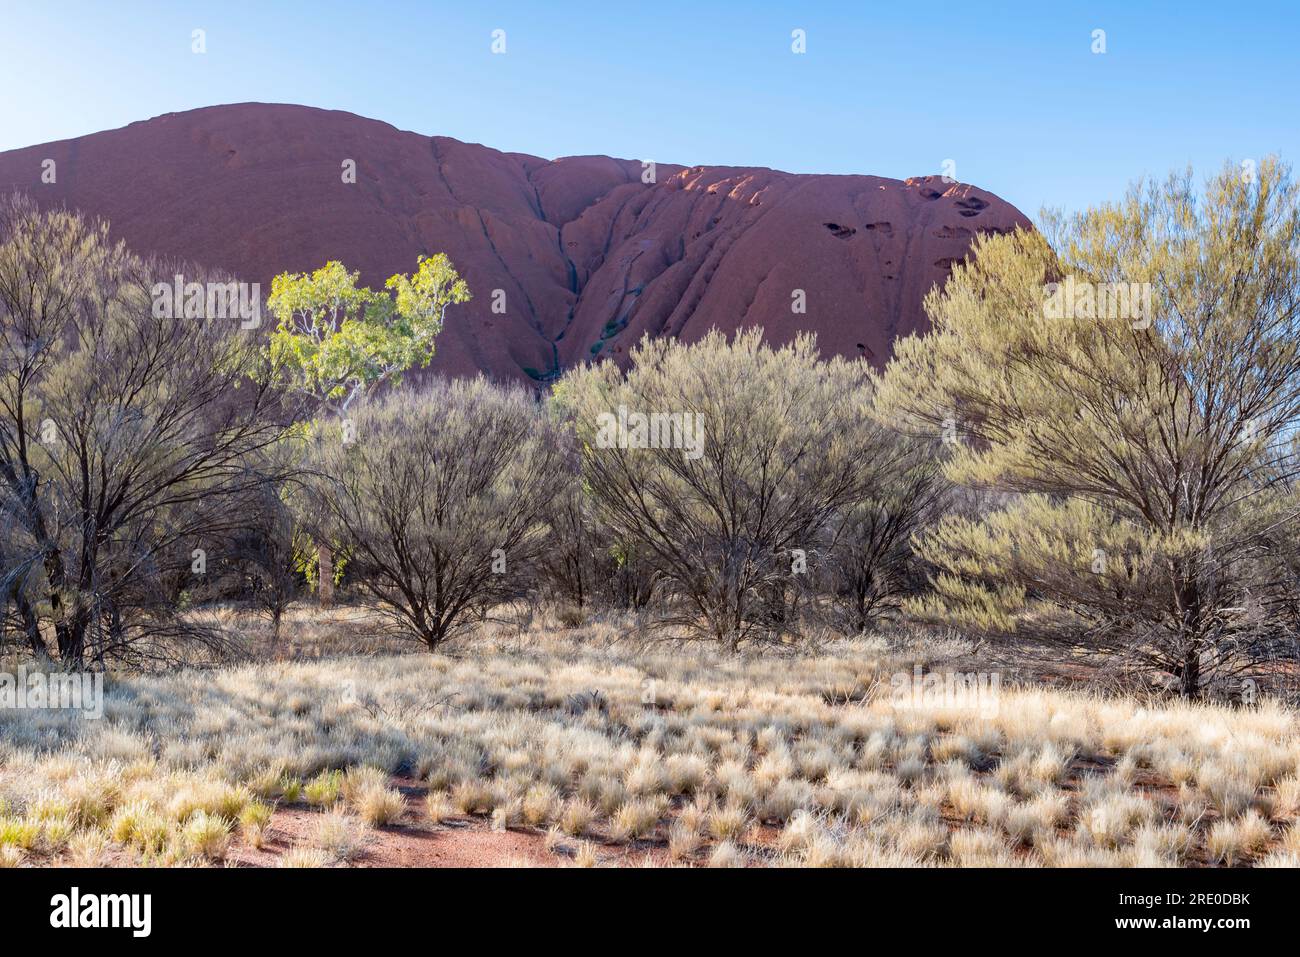 Ein Bild verschiedener Mulga-Bäume und Spinifexgras neben dem Uluru (Ayers Rock) in einem nicht empfindlichen Teil des Felsens in Zentralaustralien Stockfoto